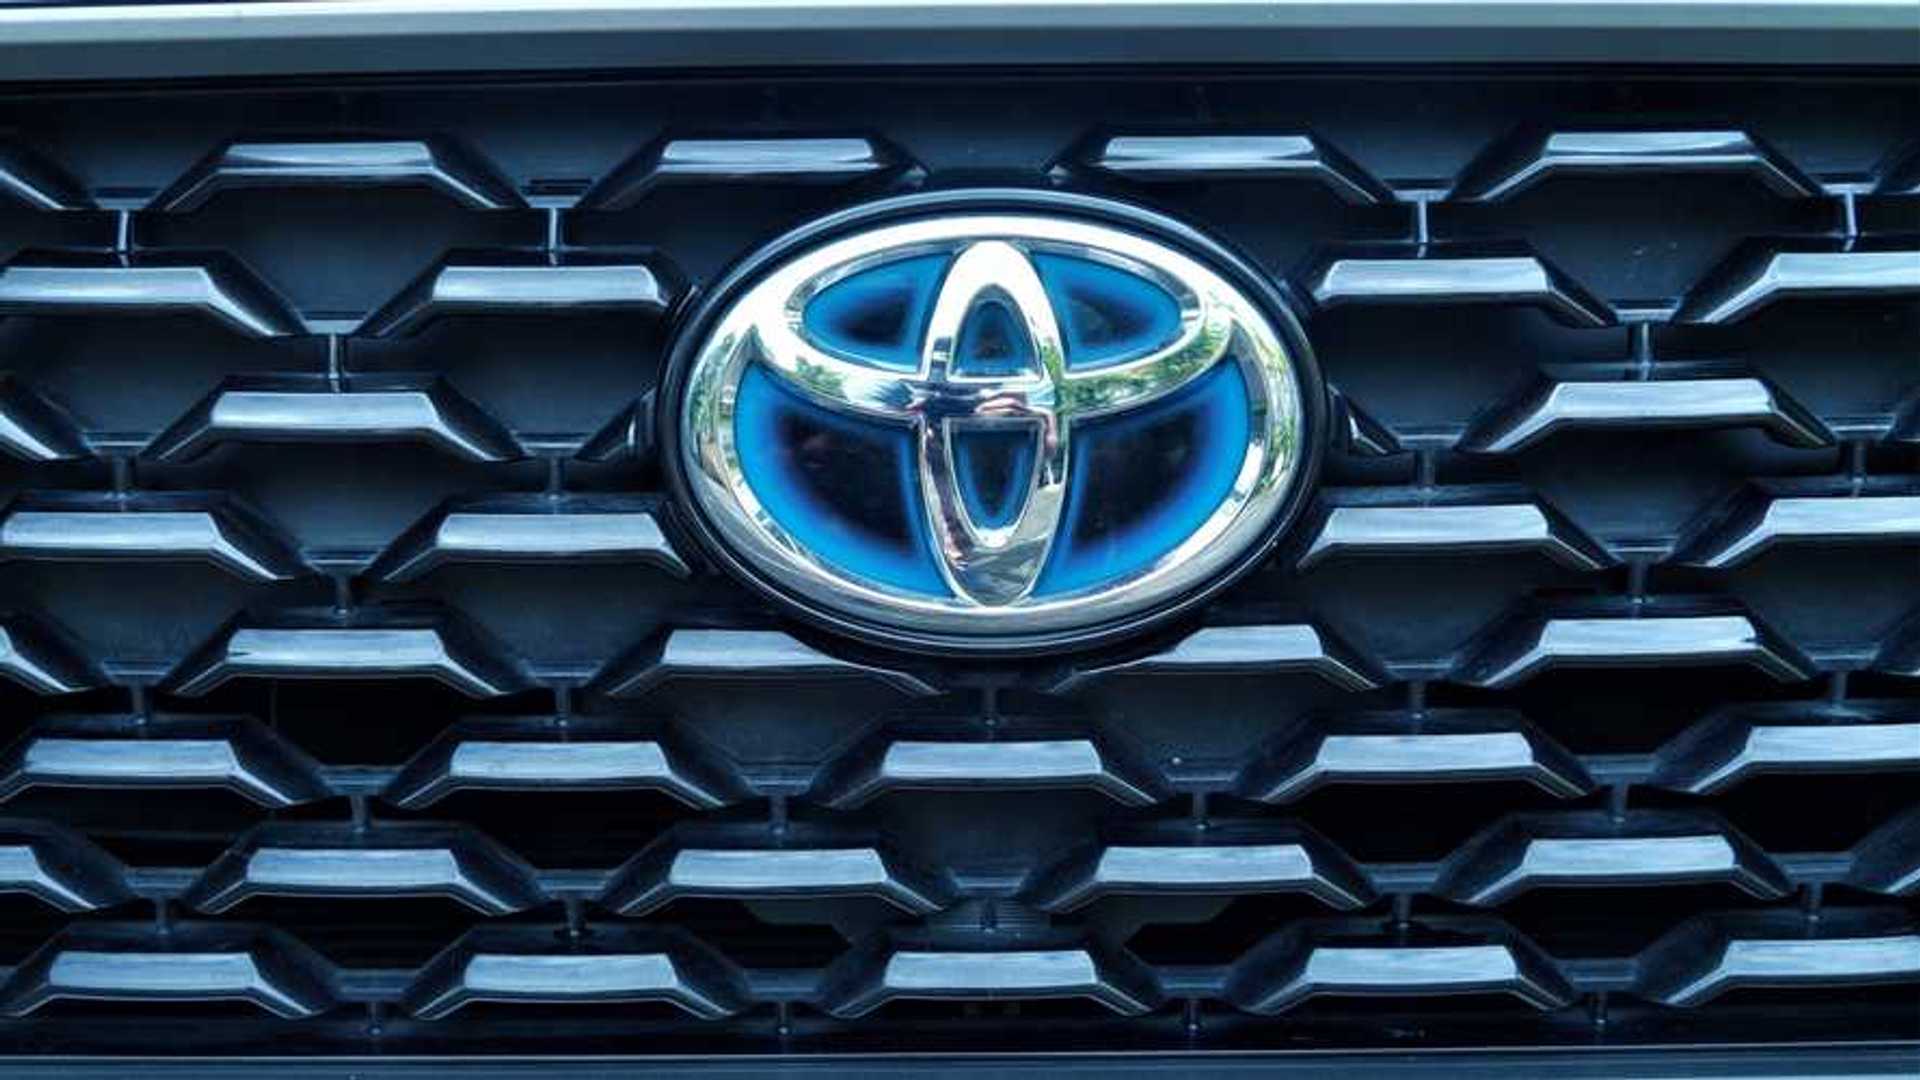 Mobil Keluaran Terbaru Toyota. Deretan Mobil Toyota Terbaru yang Hadir Tahun 2021